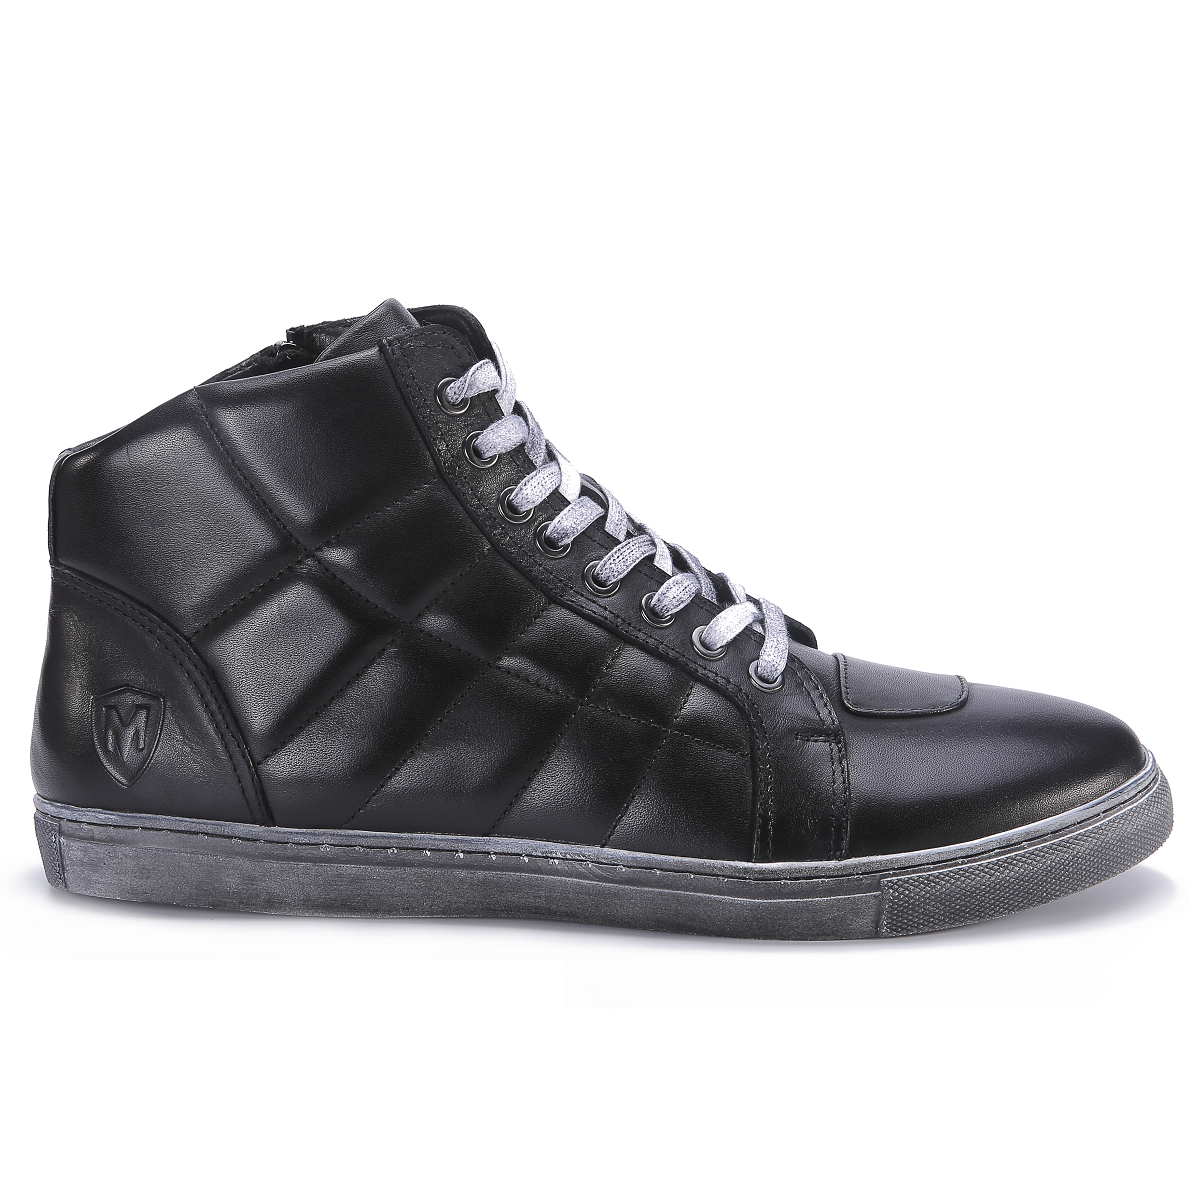 PARIS Black leather sport shoes